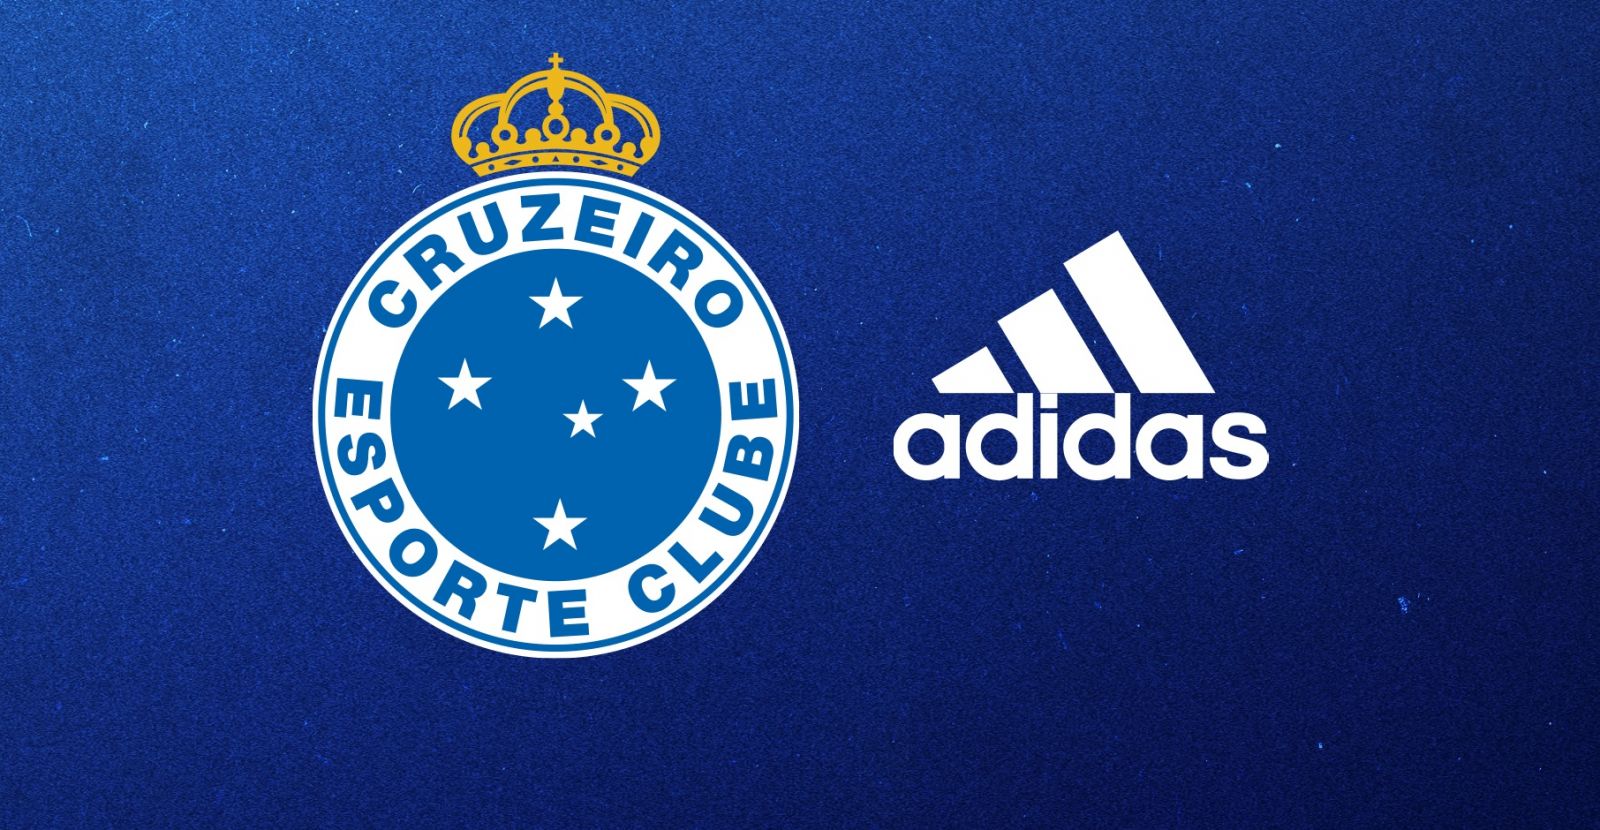 Gestores do Cruzeiro fazem primeira reunião com a Adidas para discutir parceria